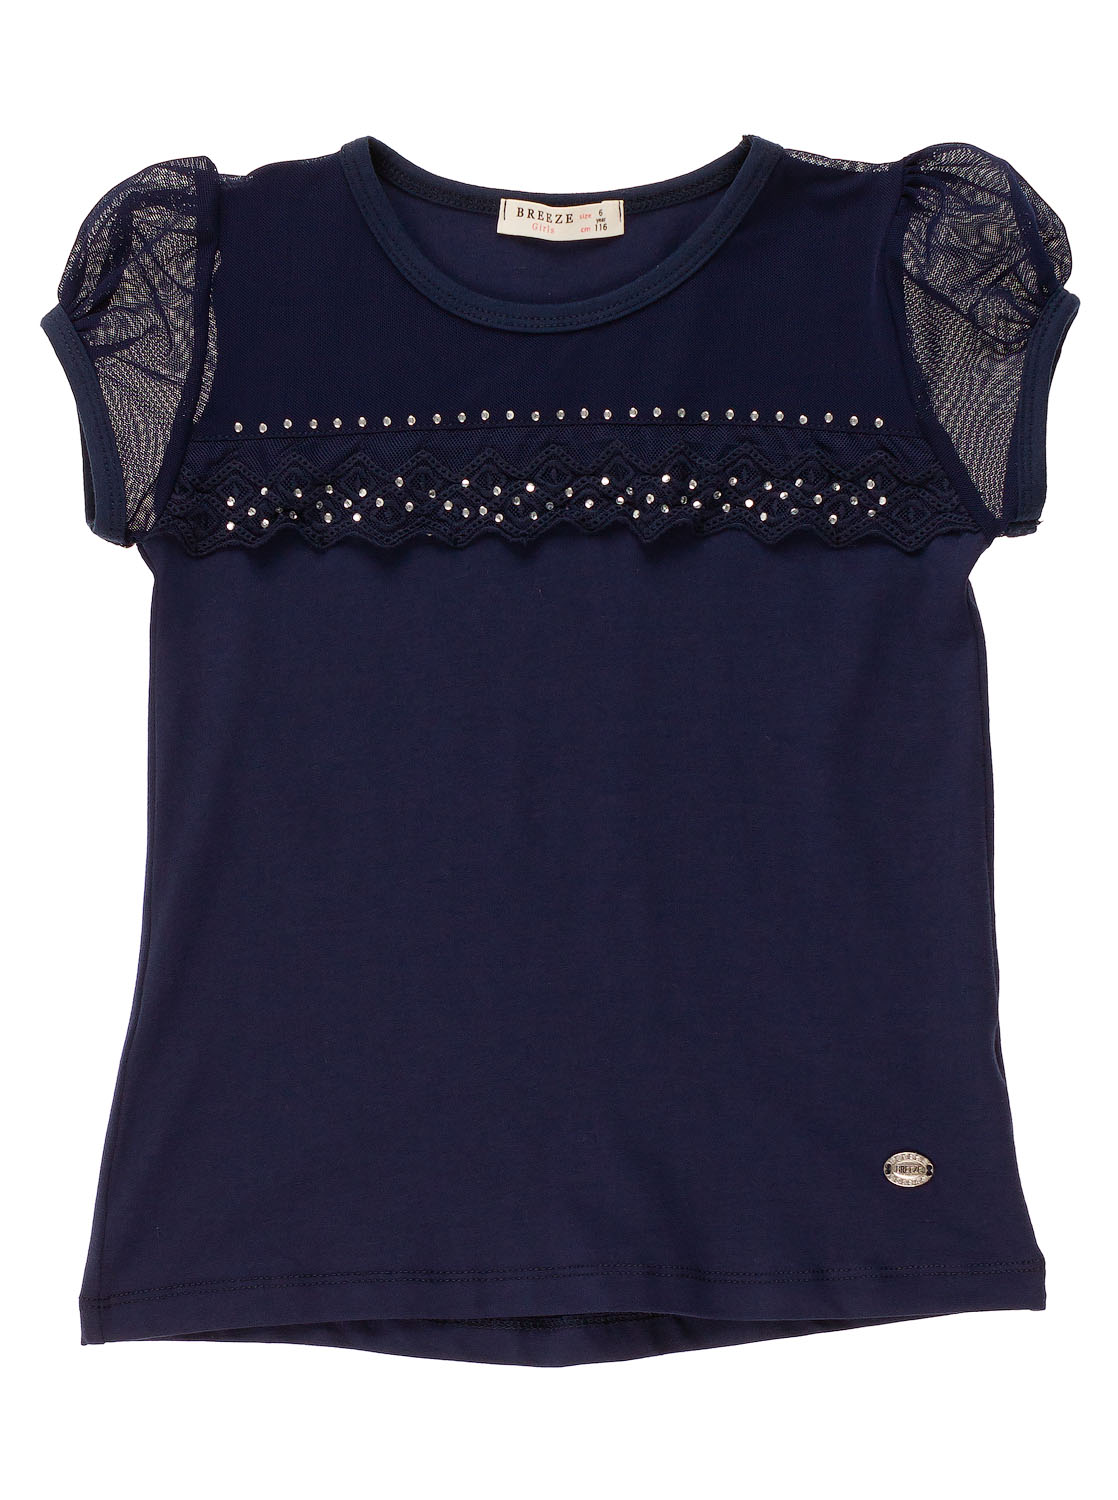 Трикотажная блузка для девочки Breeze темно-синяя 12869 - ціна